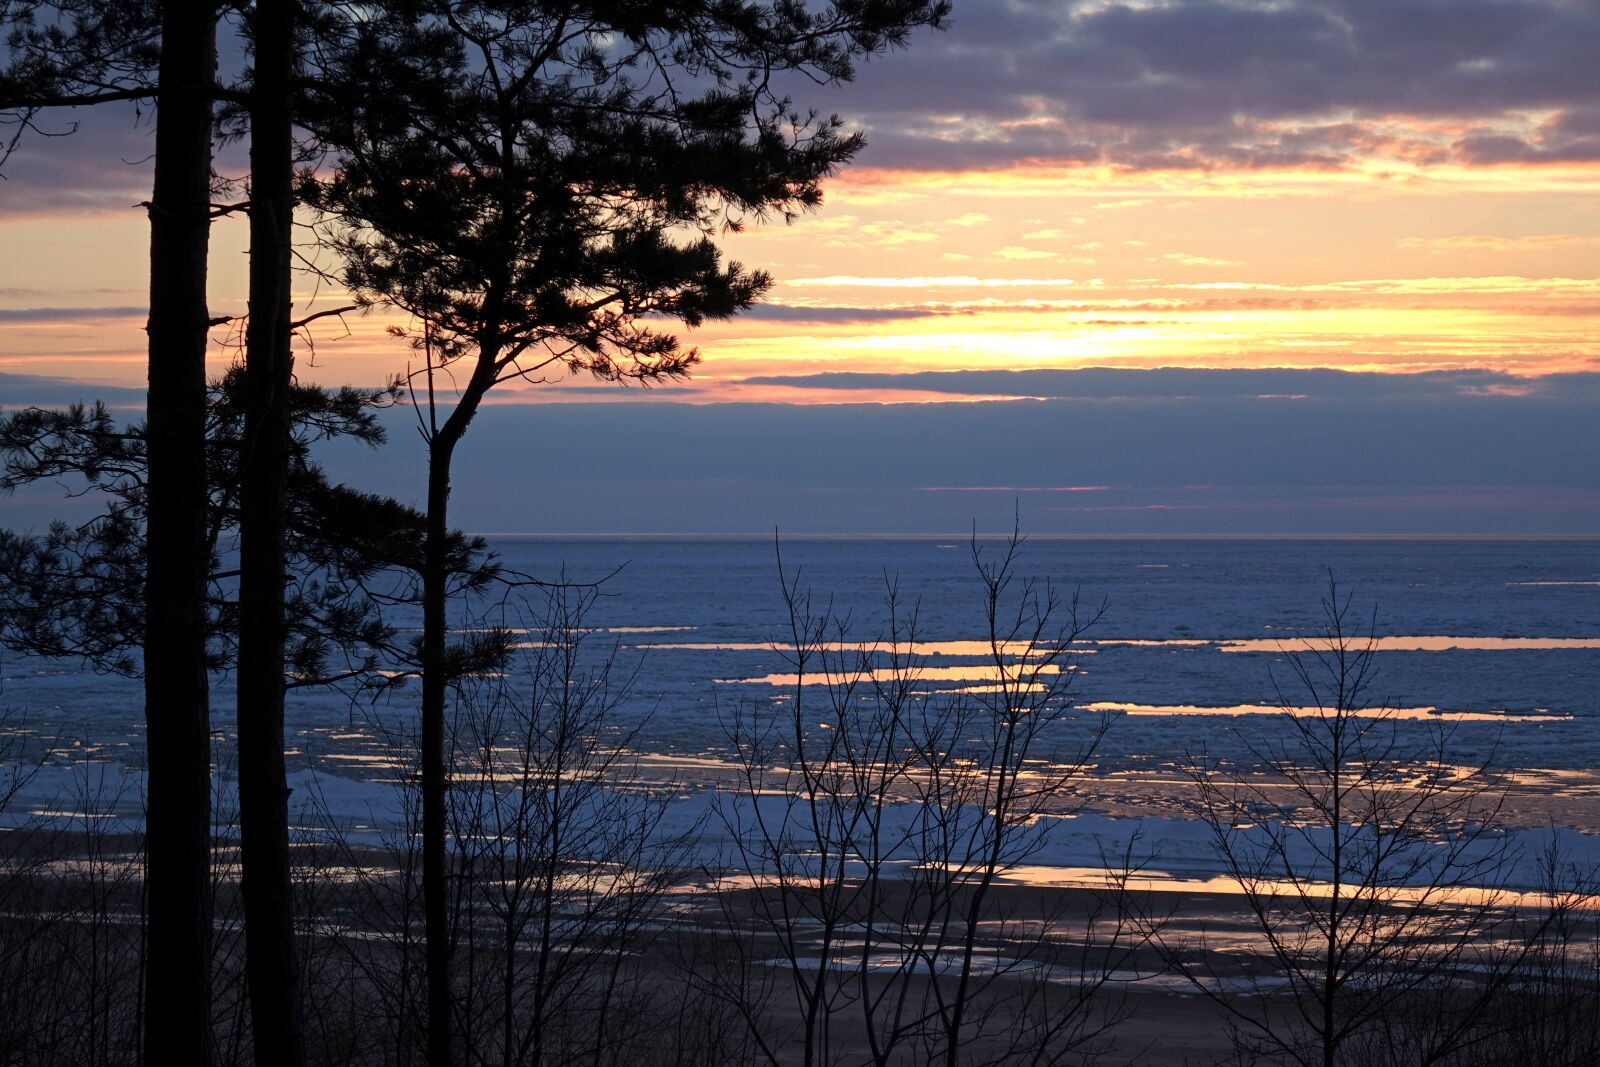 Sony Cyber-shot DSC-RX10 sample photo. Nature, sunset, landscape photography